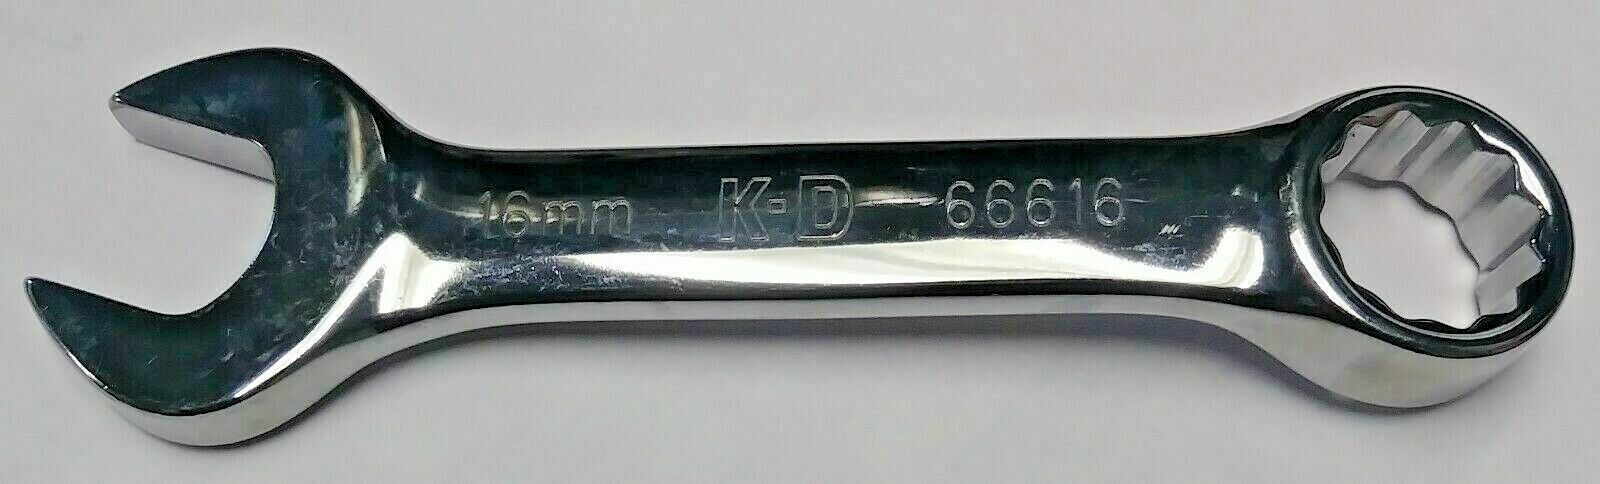 Комбинированный гаечный ключ KD Tools 66616 16mm Combination Wrench 12 Point USA